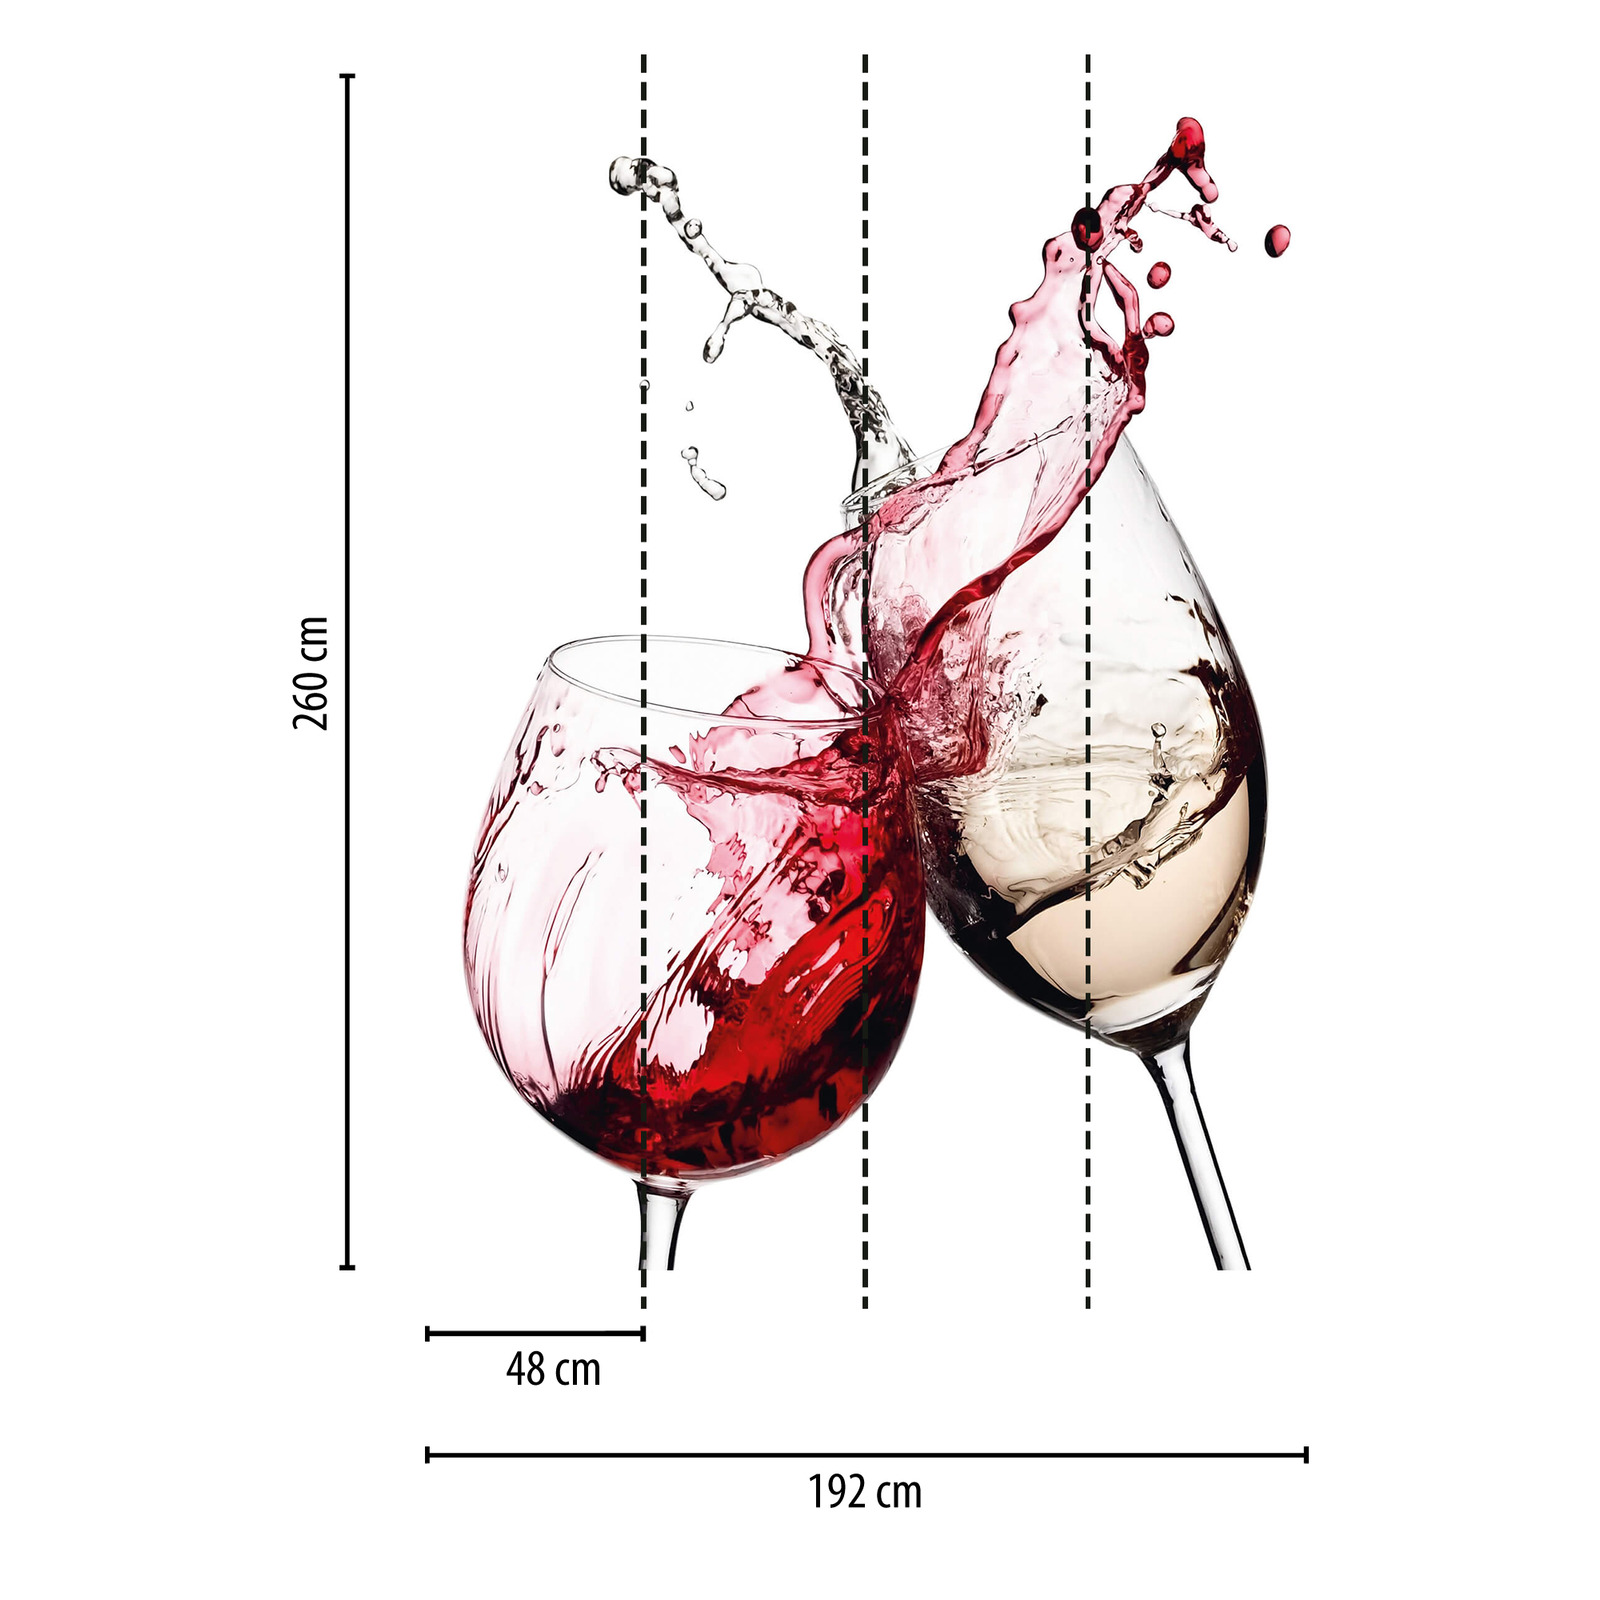             Papel pintado de vino Copas de vino blanco y rojo
        